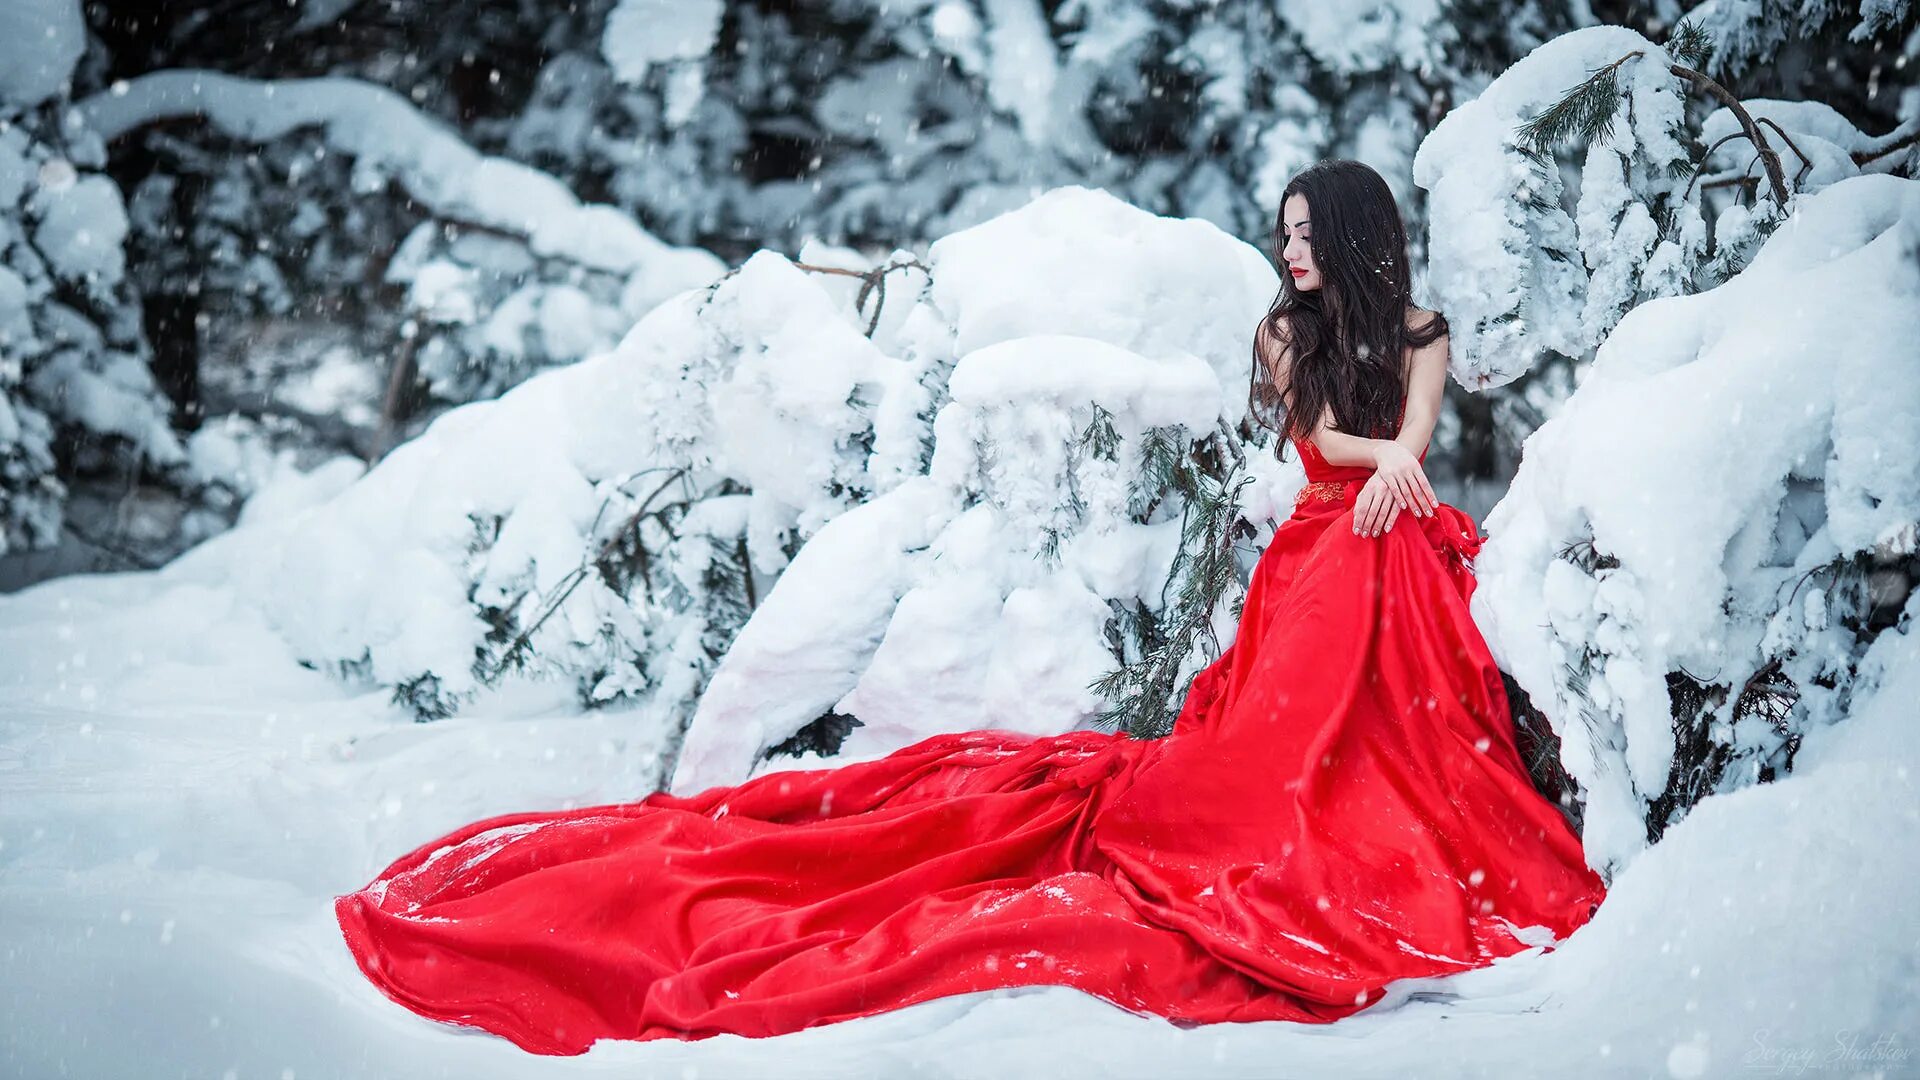 Слушать аудиокнигу дама из сугроба. Фотосессия зимой в платье. Девушка в Красном платье на снегу. Зимняя фотосессия в лесу.